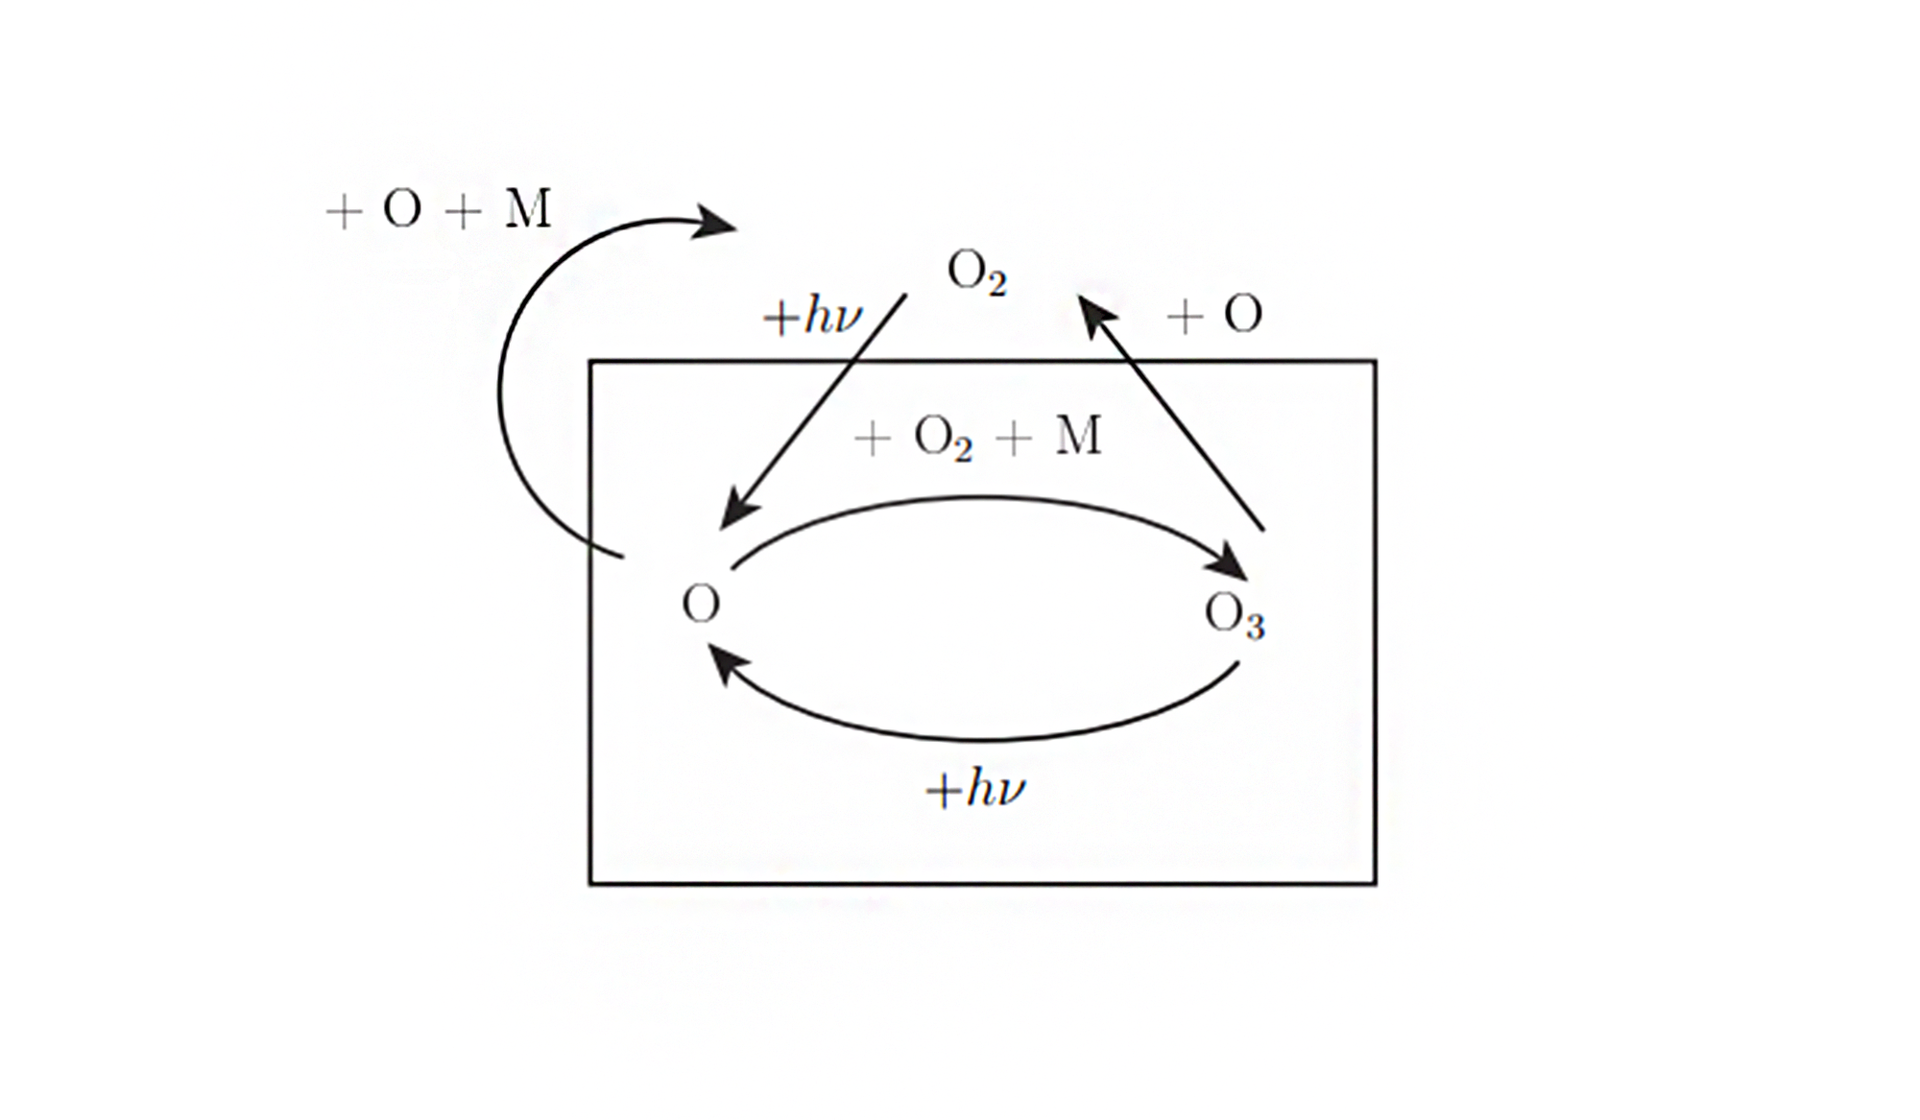 Przedstawiony na schemacie cykl ma następujący przebieg: 1. Pod wpływem promieniowania ultrafioletowego dwuatomowa cząsteczka tlenu jest rozbijana na atom tlenu  2. W wyniku zderzenia atomu tlenu z cząsteczką tlenu powstaje ozon. Zapis reakcji. Atom tlenu dodać dwuatomowa cząsteczka tlenu strzałka w prawo cząsteczka ozonu dodać M (Cząsteczki M odprowadzają ciepło z układu). , 3. Fale promieniowania ultrafioletowego powodują rozpad cząsteczki ozonu. Zapis reakcji. Cząsteczka ozonu dodać promieniowanie ultrafioletowe strzałka w prawo dwuatomowa cząsteczka tlenu dodać atom tlenu., 4. Tlen atomowy może ponownie utworzyć ozon (etap 2) lub utworzyć tlen cząsteczkowy. Zapis reakcji 1: cząsteczka ozonu dodać atom tlenu strzałka w prawo 2 cząsteczki dwuatomowego tlenu. Zapis reakcji 2: dwa atomy tleny strzałka w prawo cząsteczka dwuatomowego tlenu.